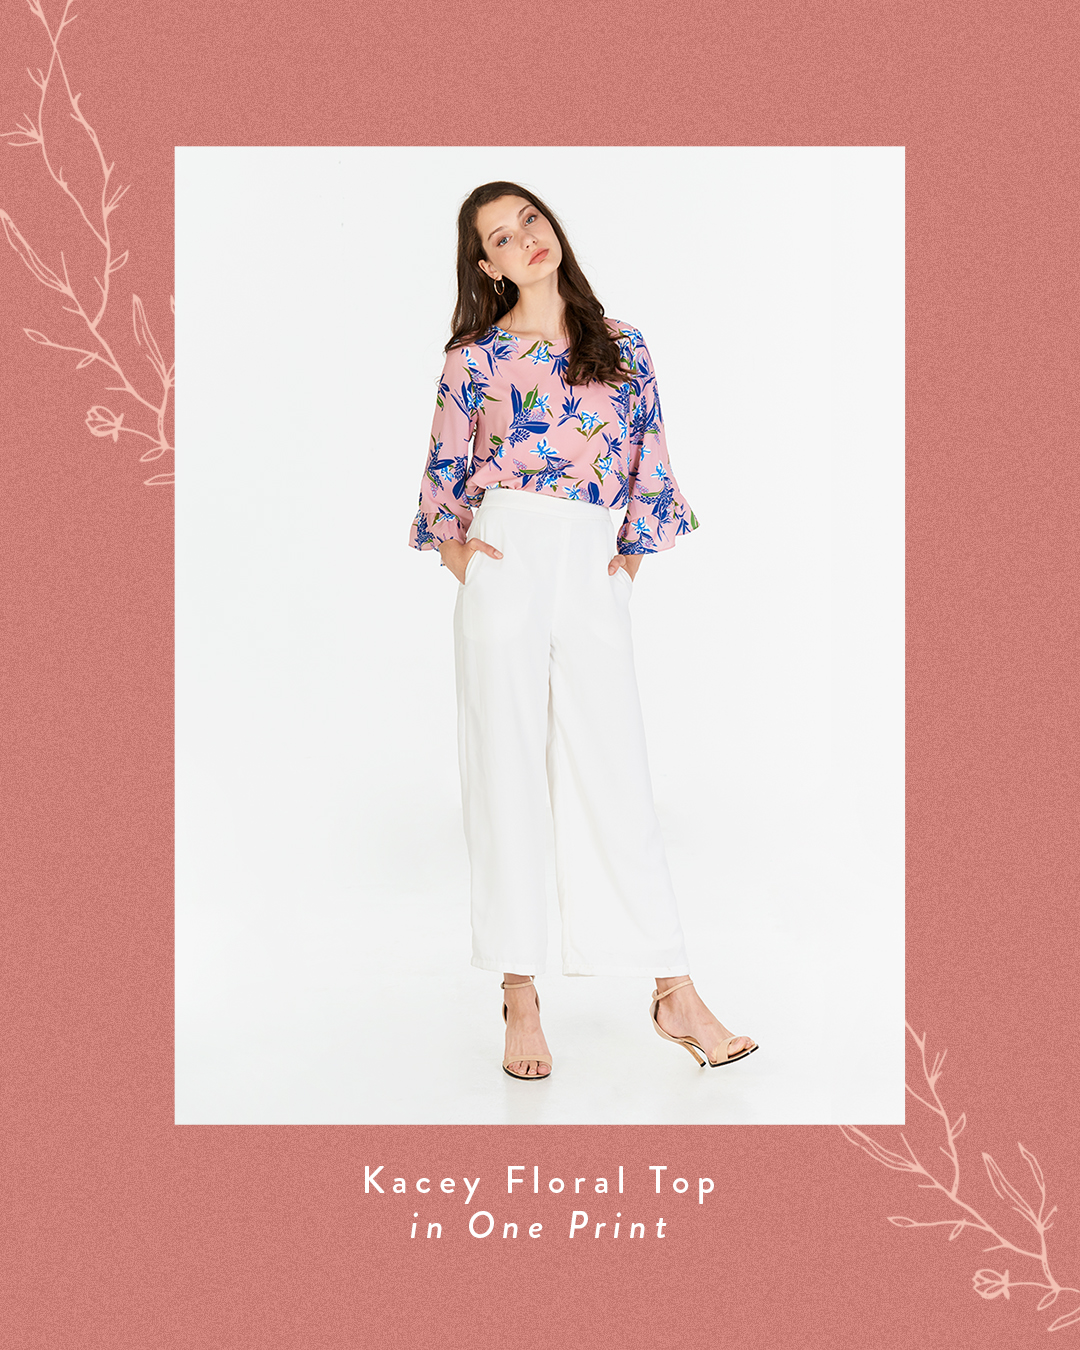 Kacey Floral Printed Top